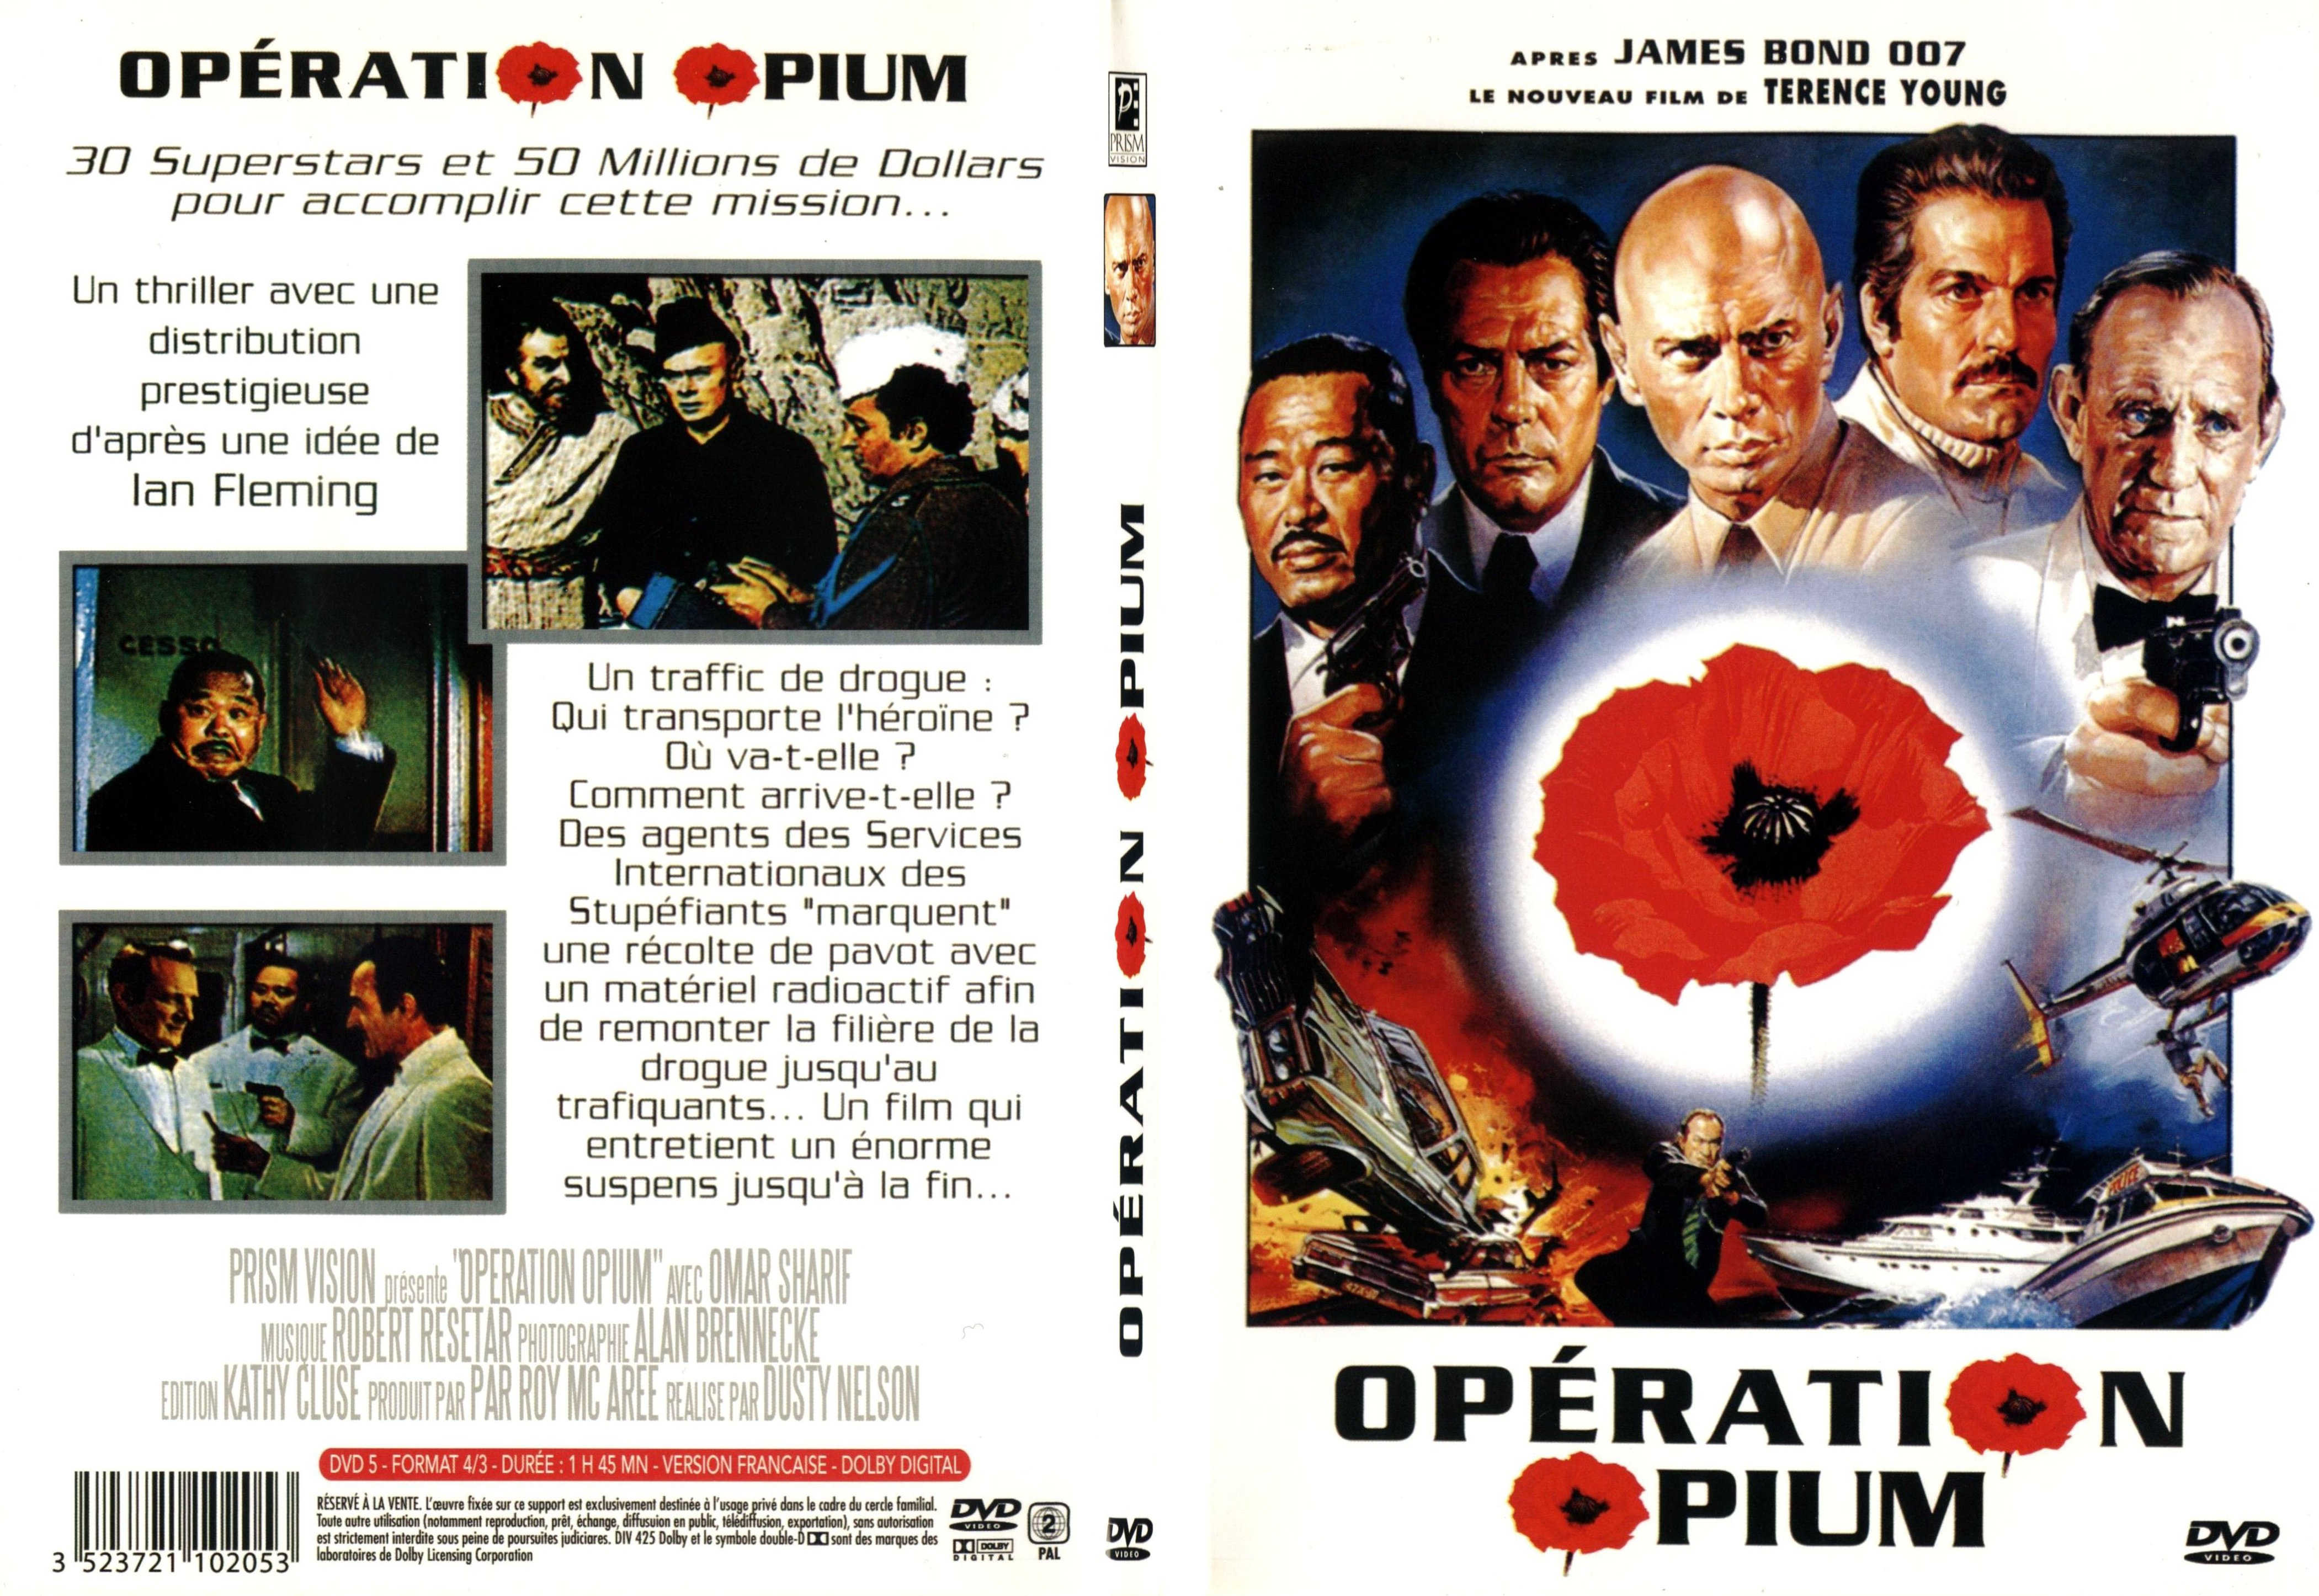 Jaquette DVD Operation opium - SLIM